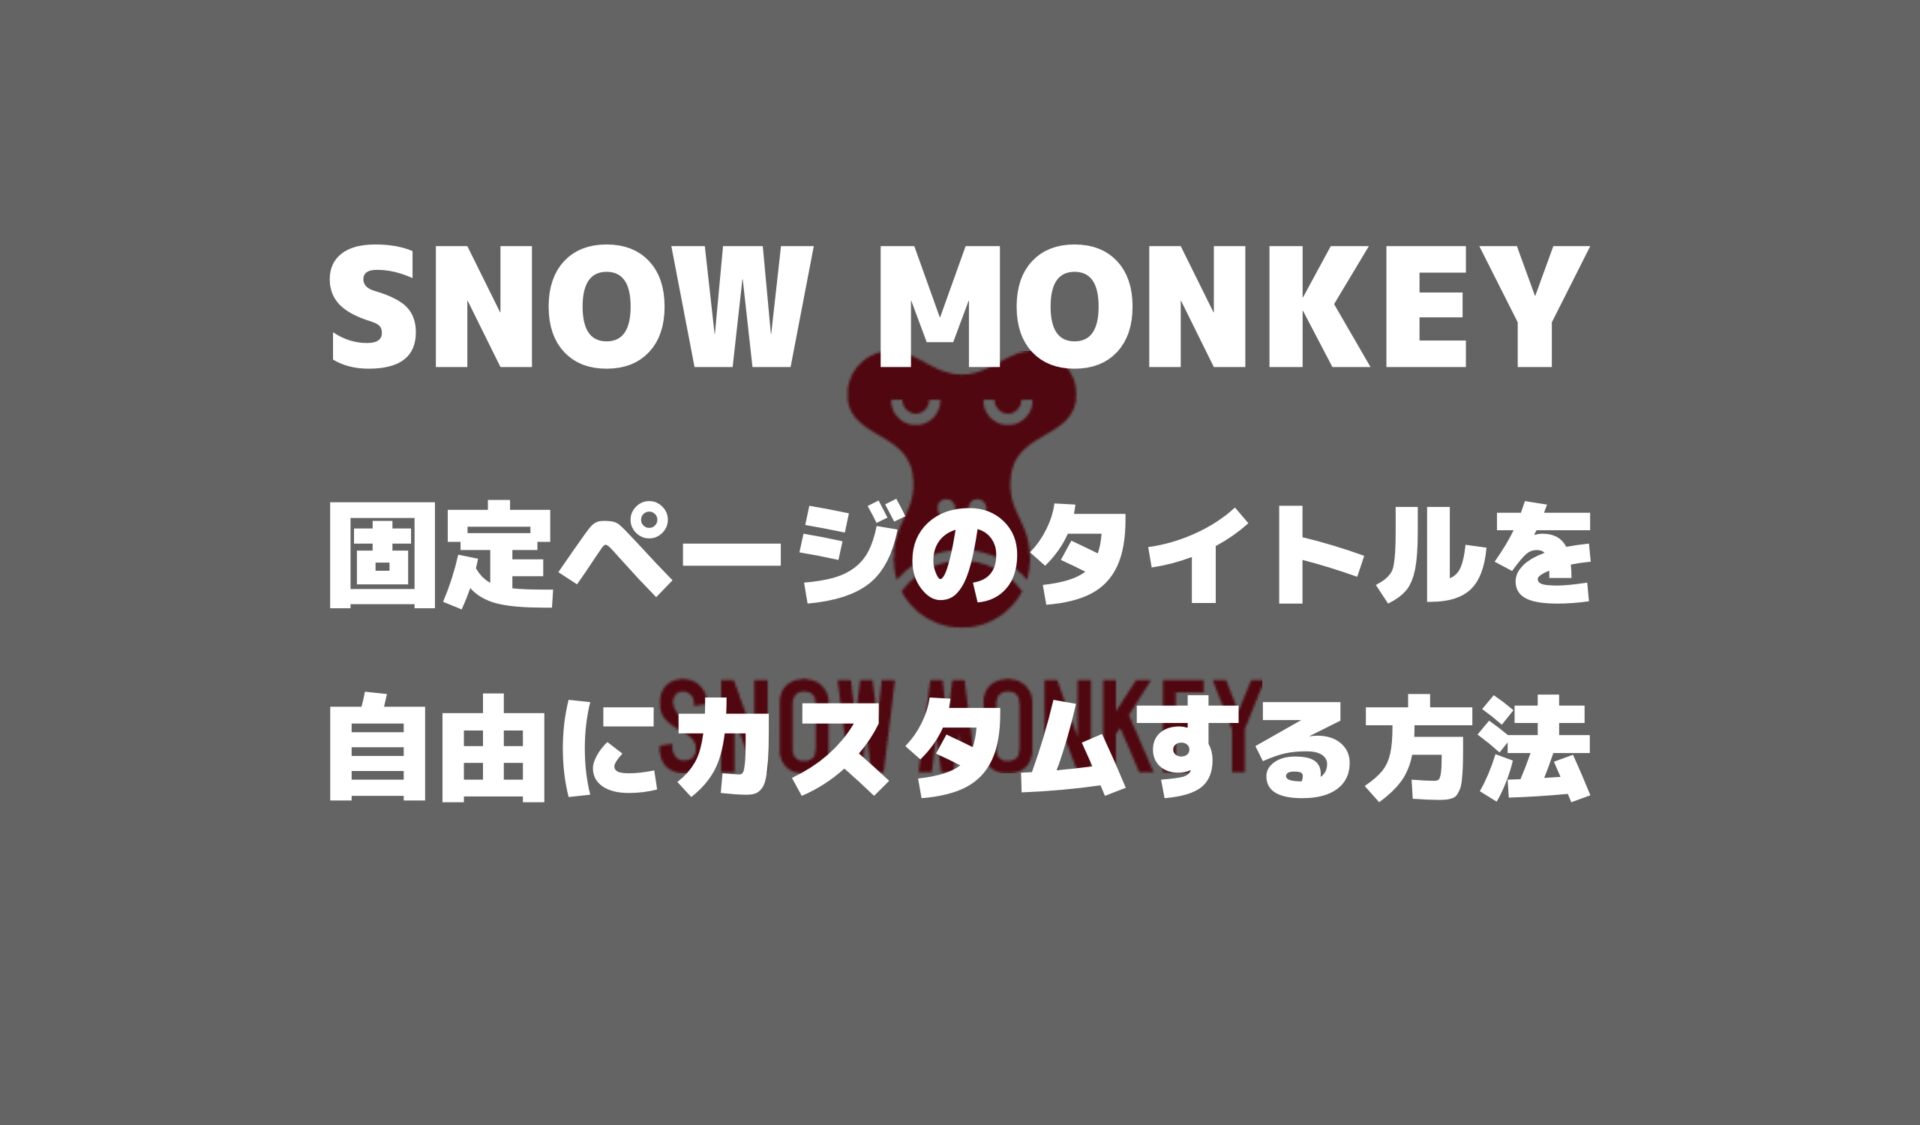 snowmonkeyの固定ページにクラス名をつけて装飾する方法